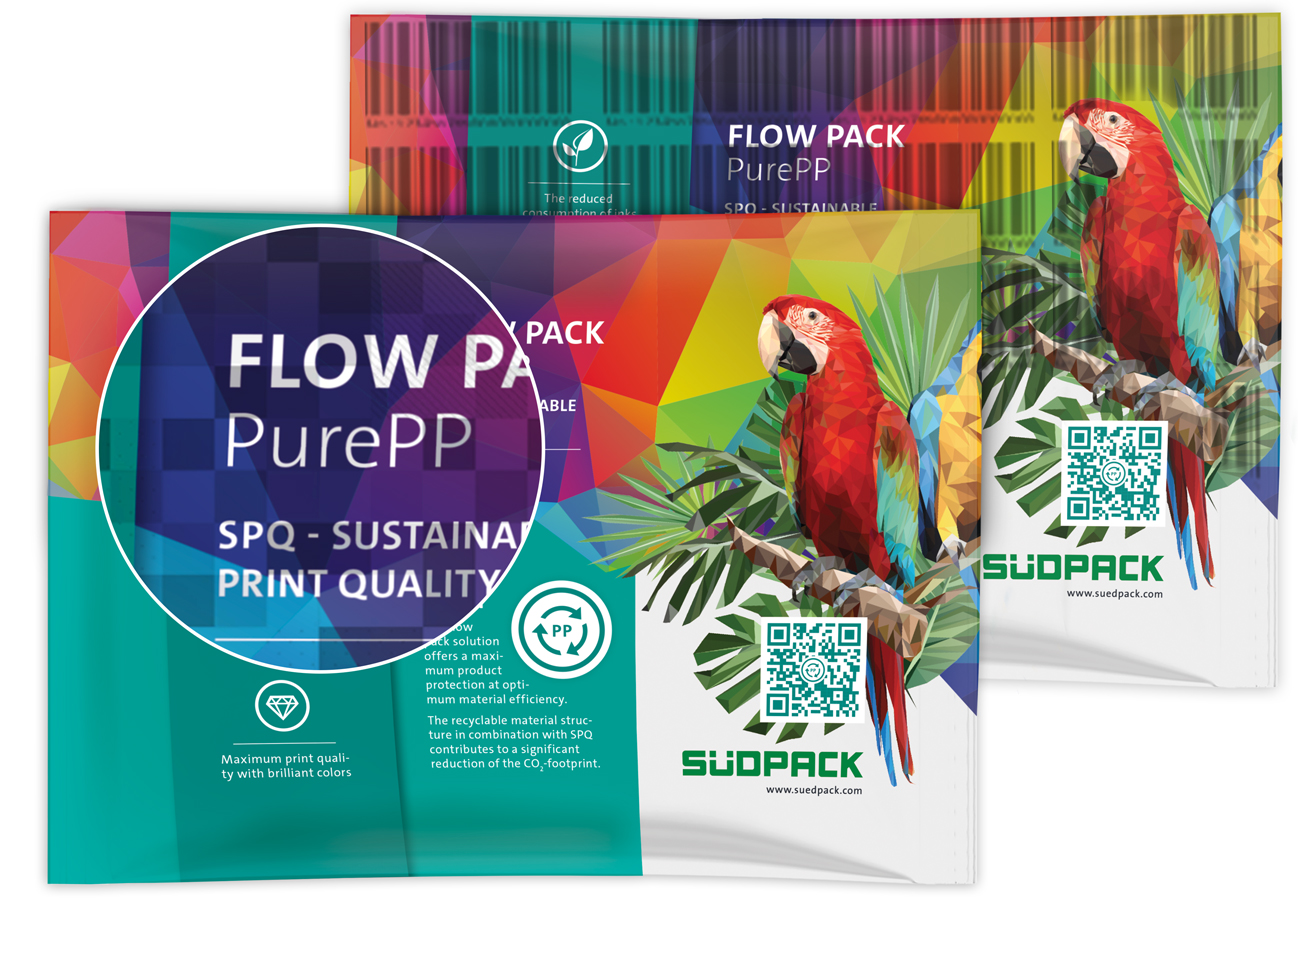 Dieses Bild zeigt eine mit Digimarc Digital Watermark-Codes bedruckte Flow Pack PurePP Verpackung von SÜDPACK.